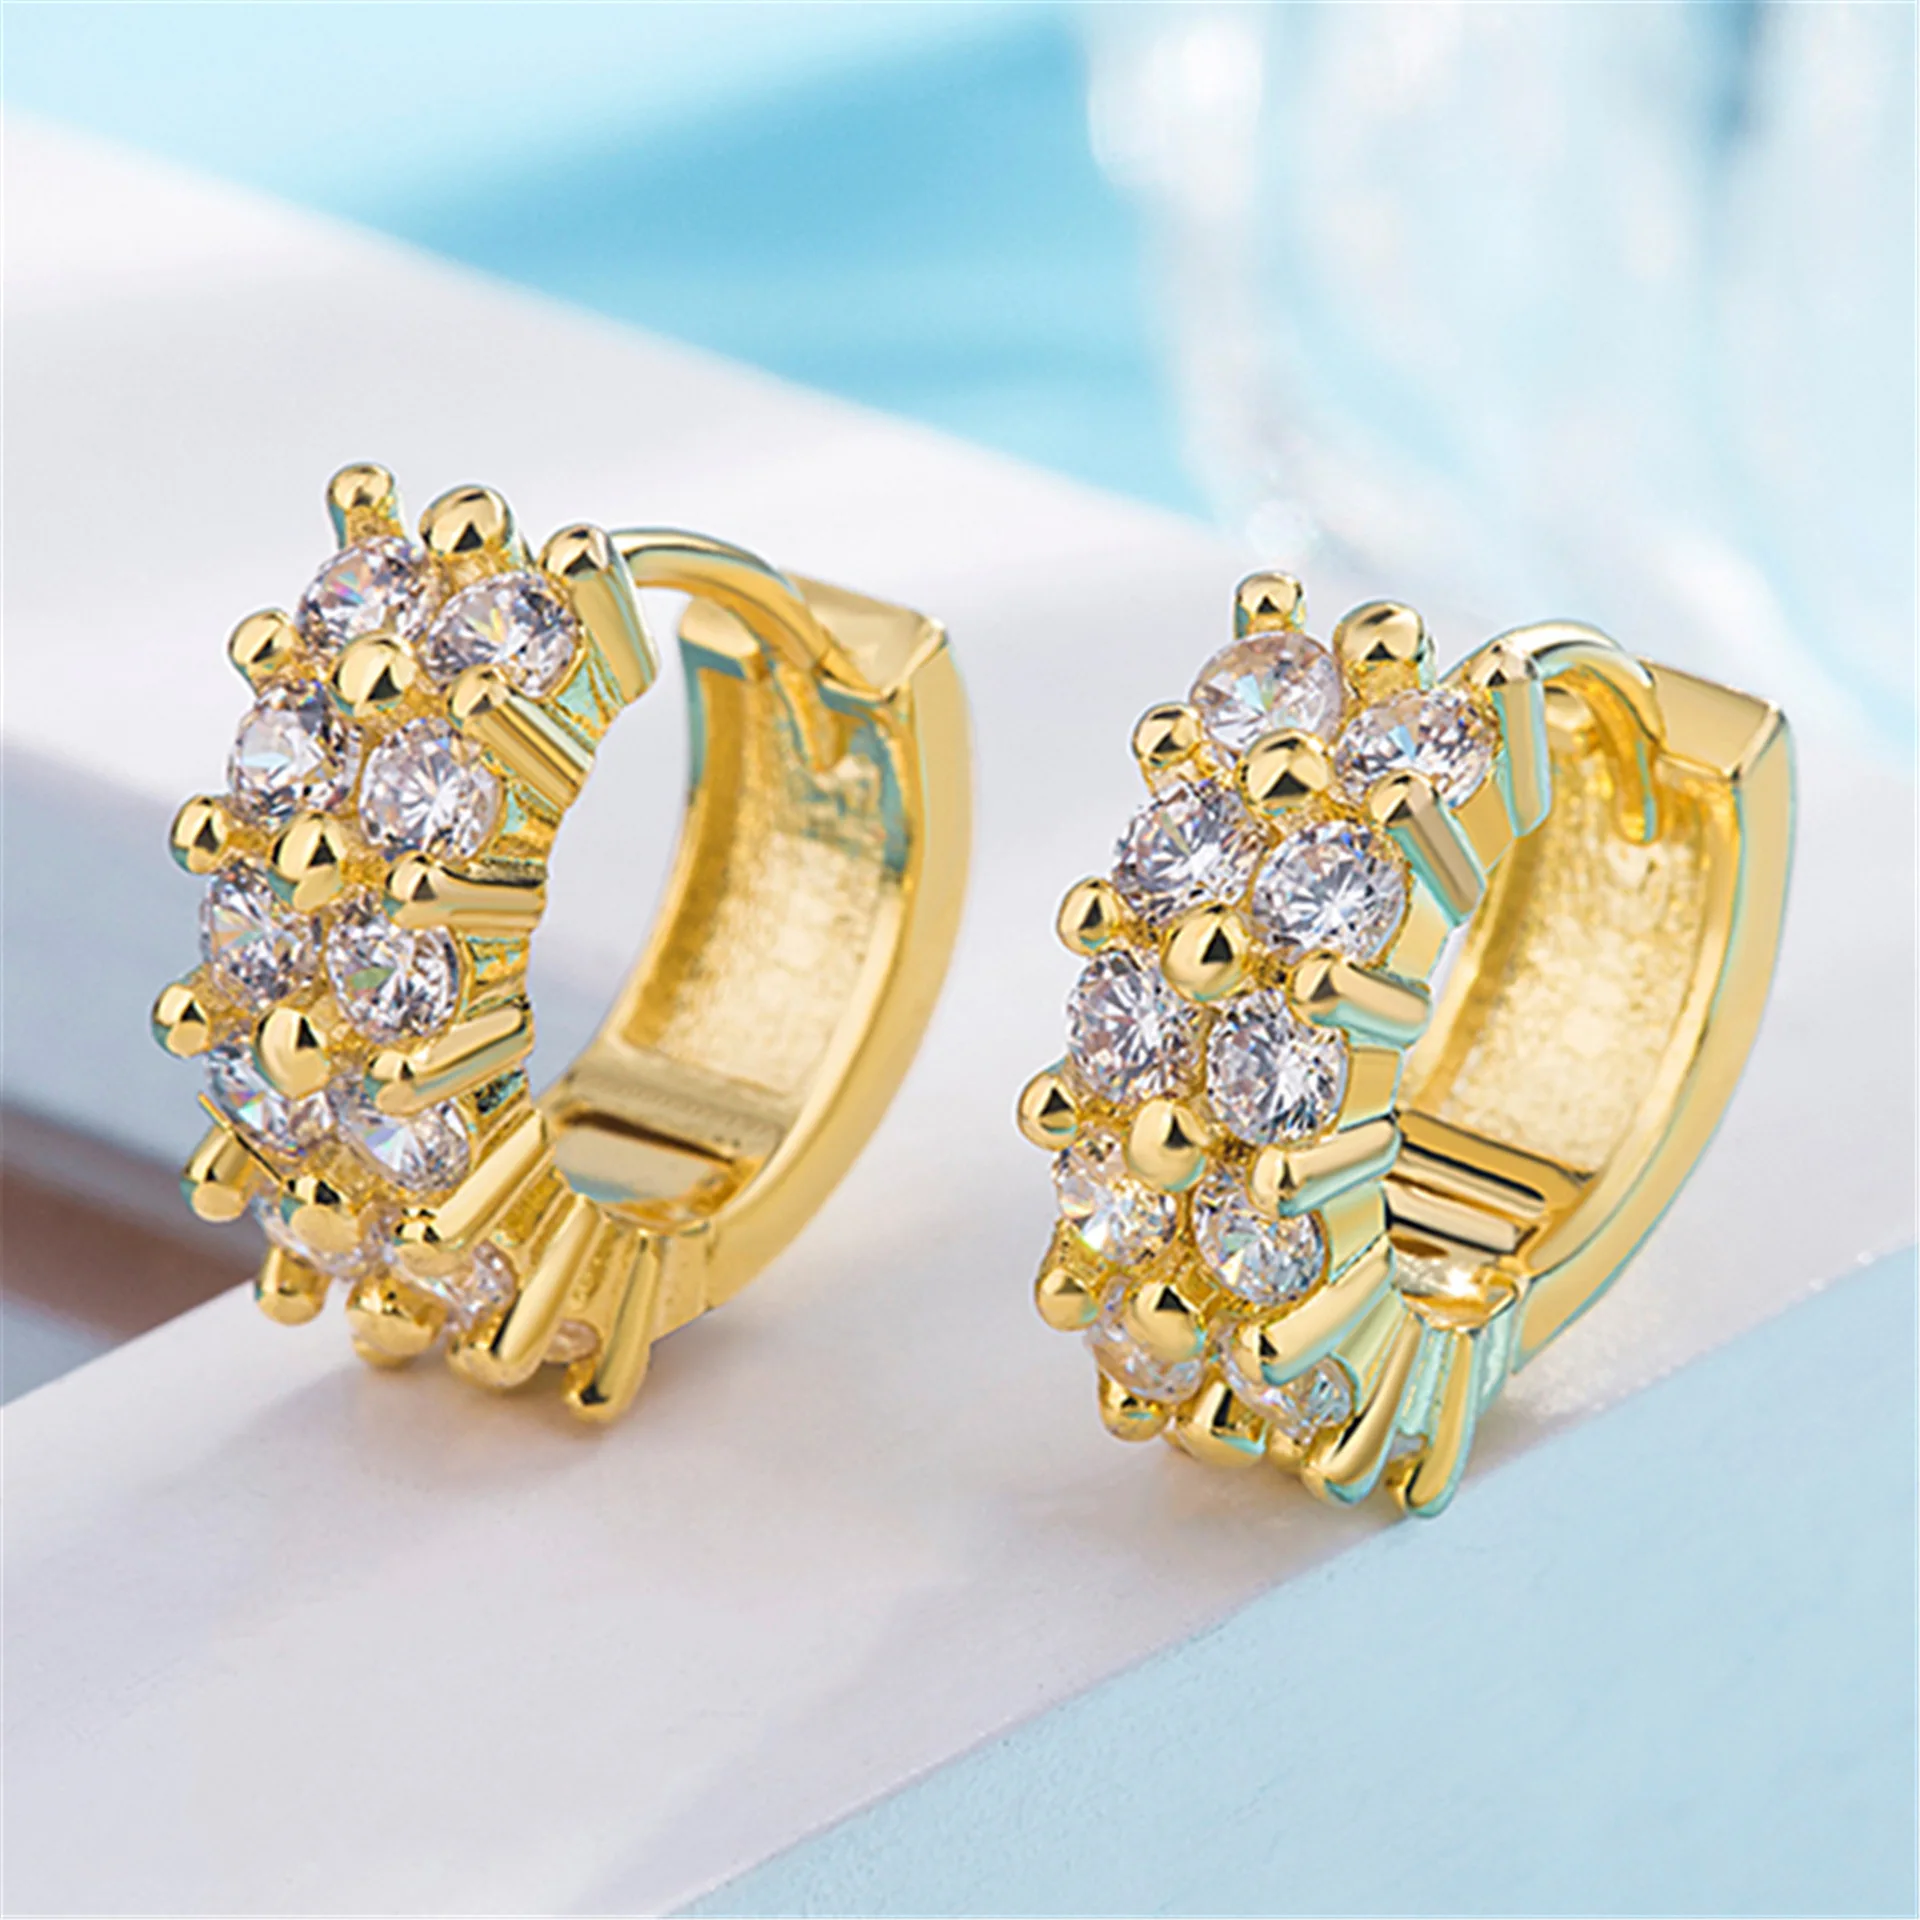 

HKMMH 925 Sterling Silver Korean Double Row AAA Zircon Hoop Earrings Women Fashion Golden Color Elegant Gorgeous Oorbellen